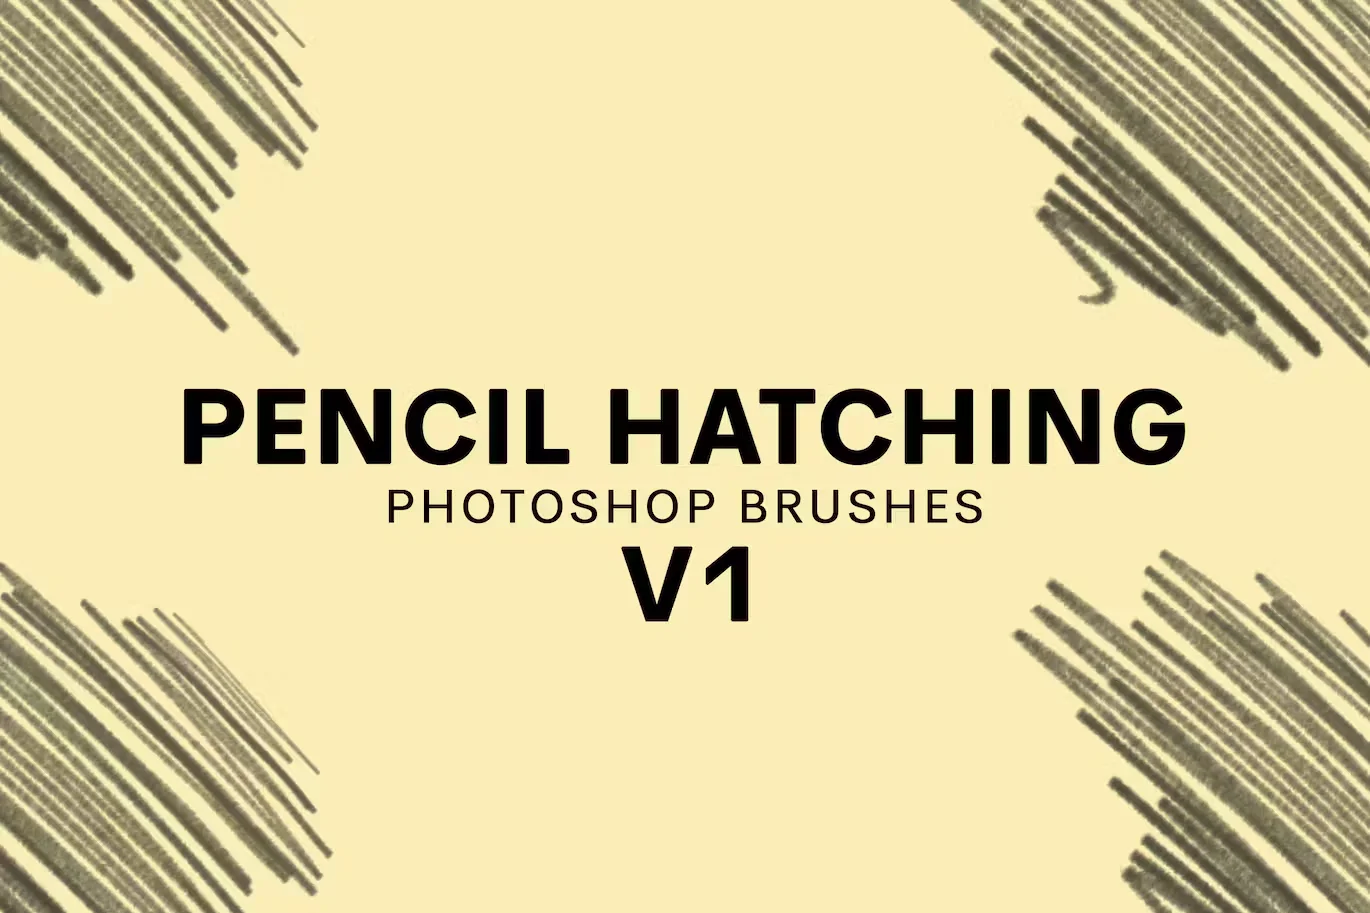 20 Pencil Hatching Photoshop Brushes V1